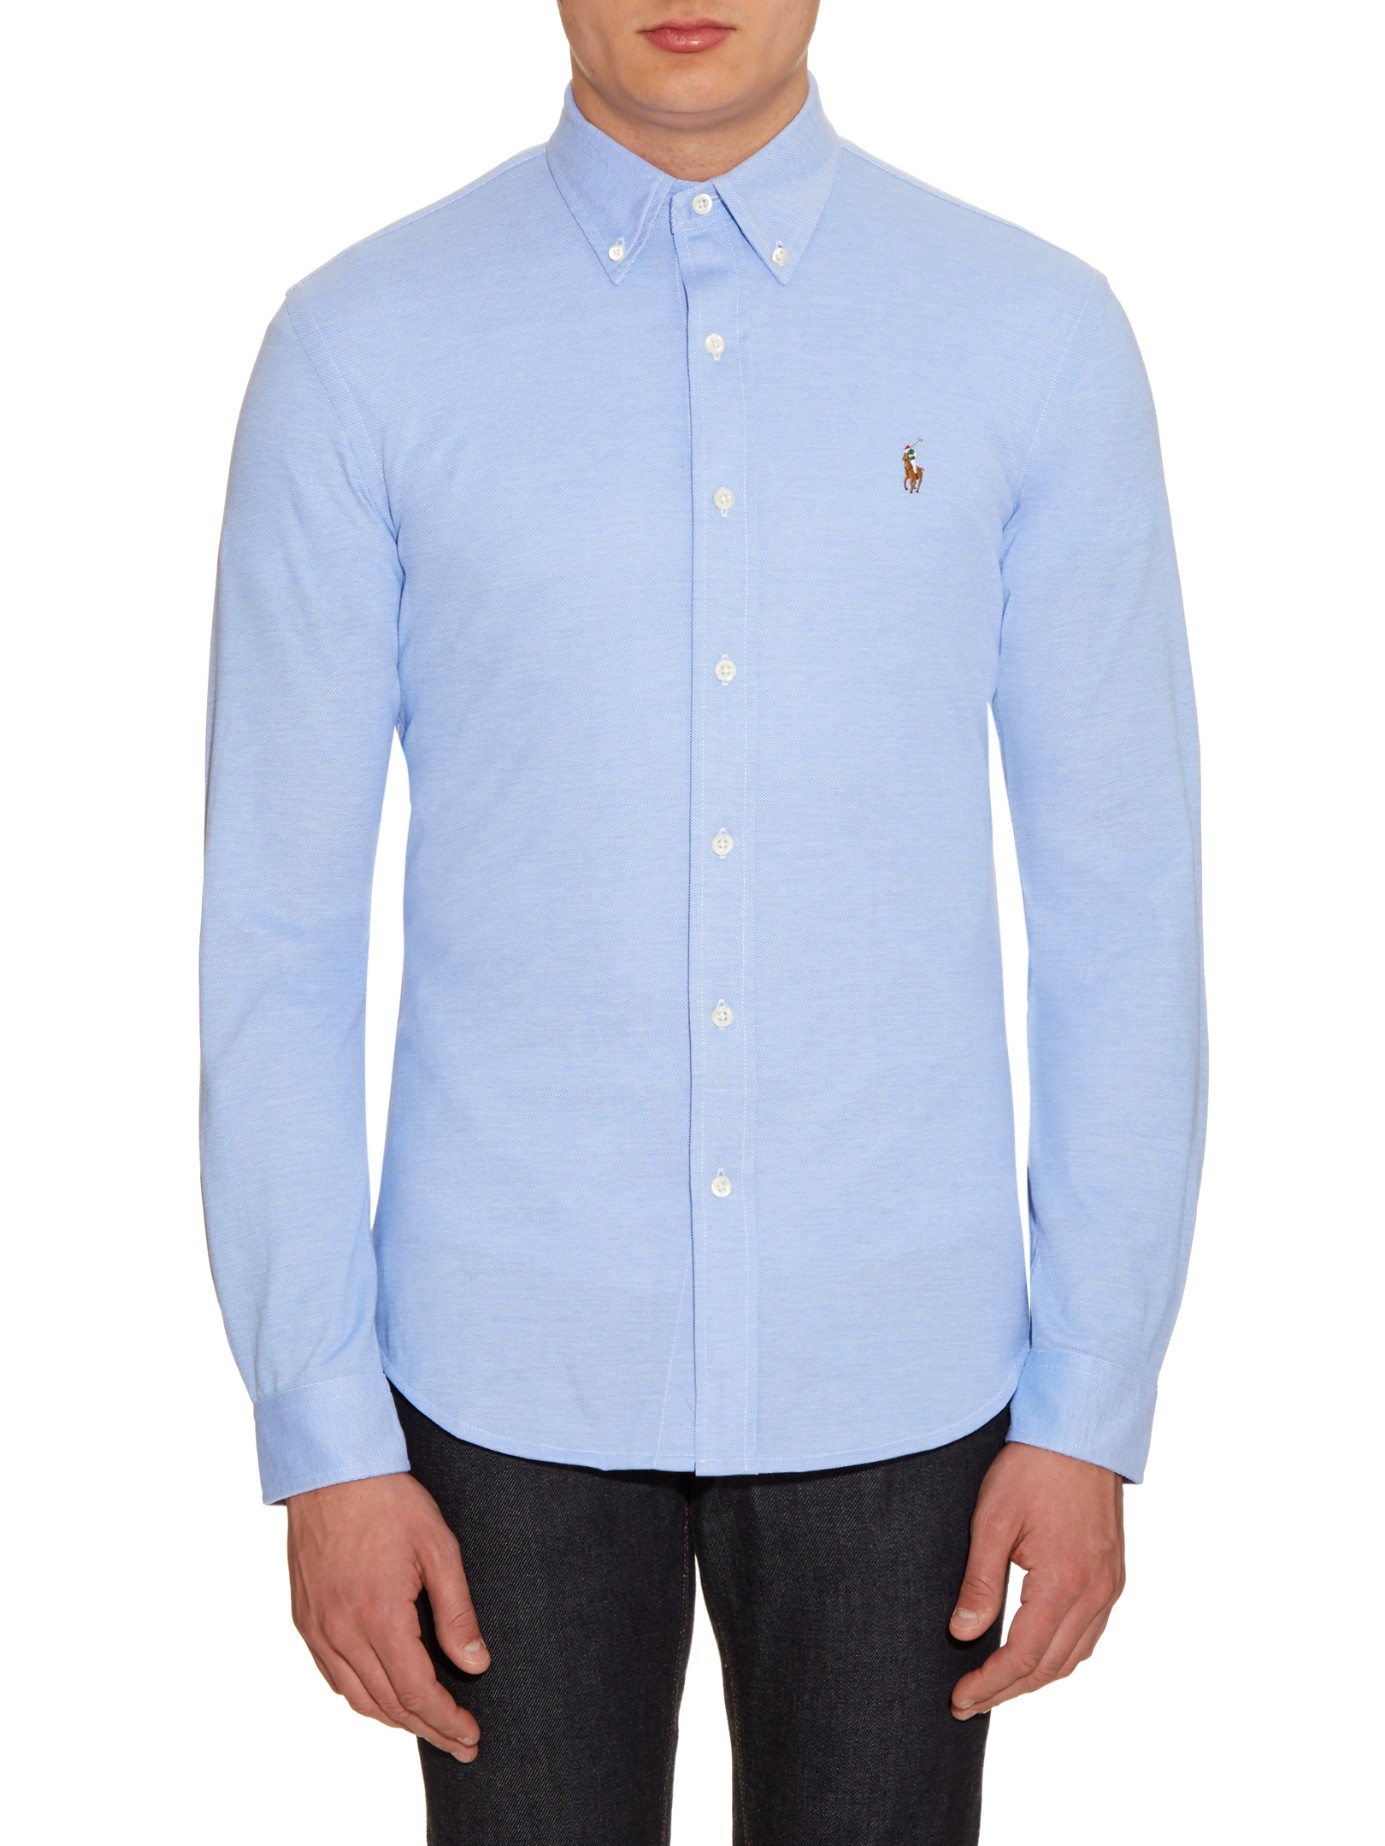 Polo Ralph Lauren Button Down Collar Cotton Piqué Shirt In Light Blue Blue For Men Lyst 0468